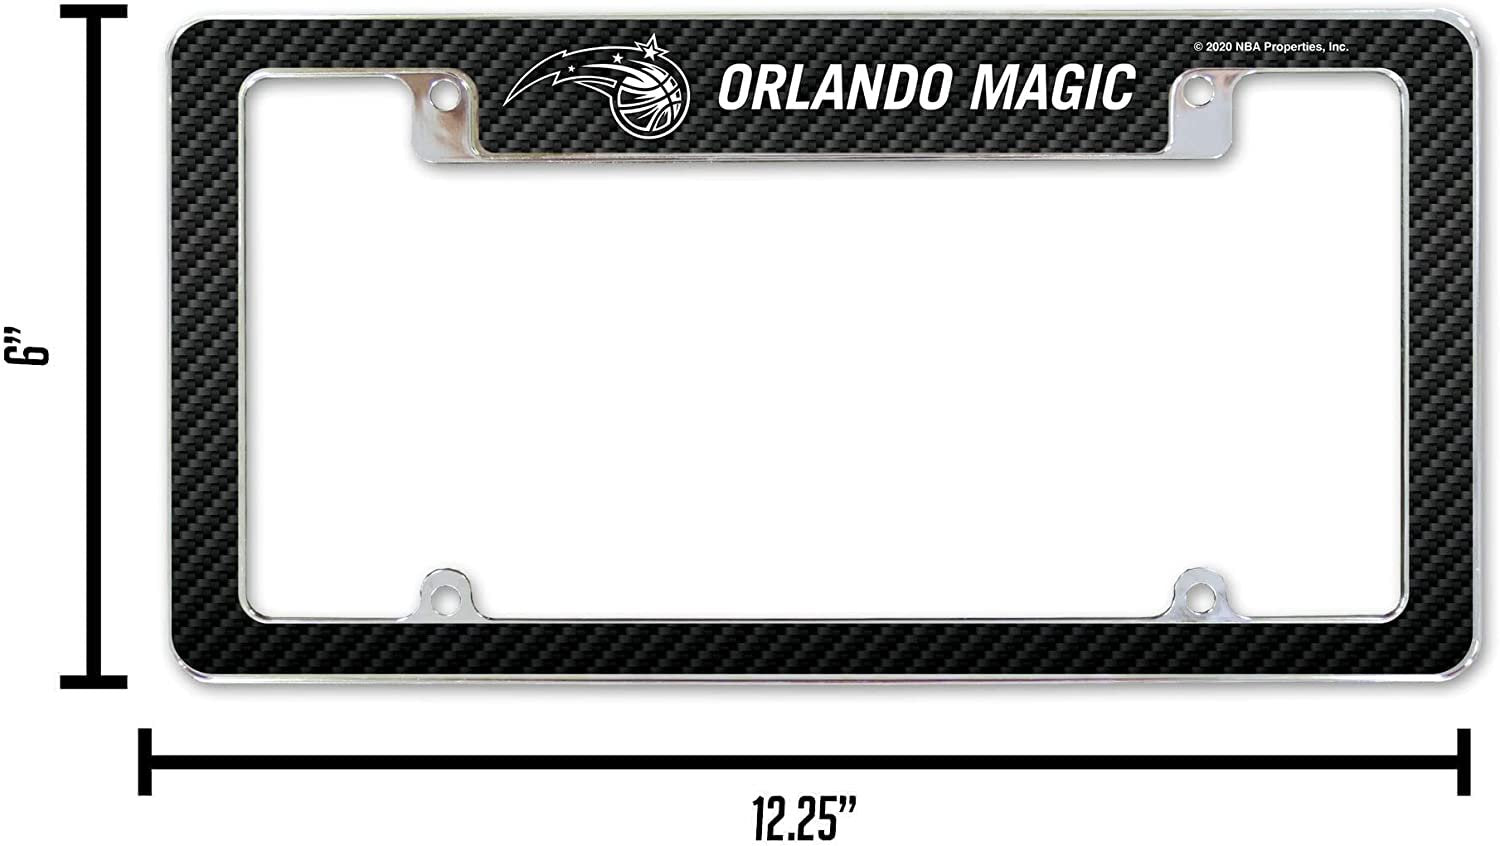 Orlando Magic Metal License Plate Frame Chrome Tag Cover Carbon Fiber Design 6x12 Inch